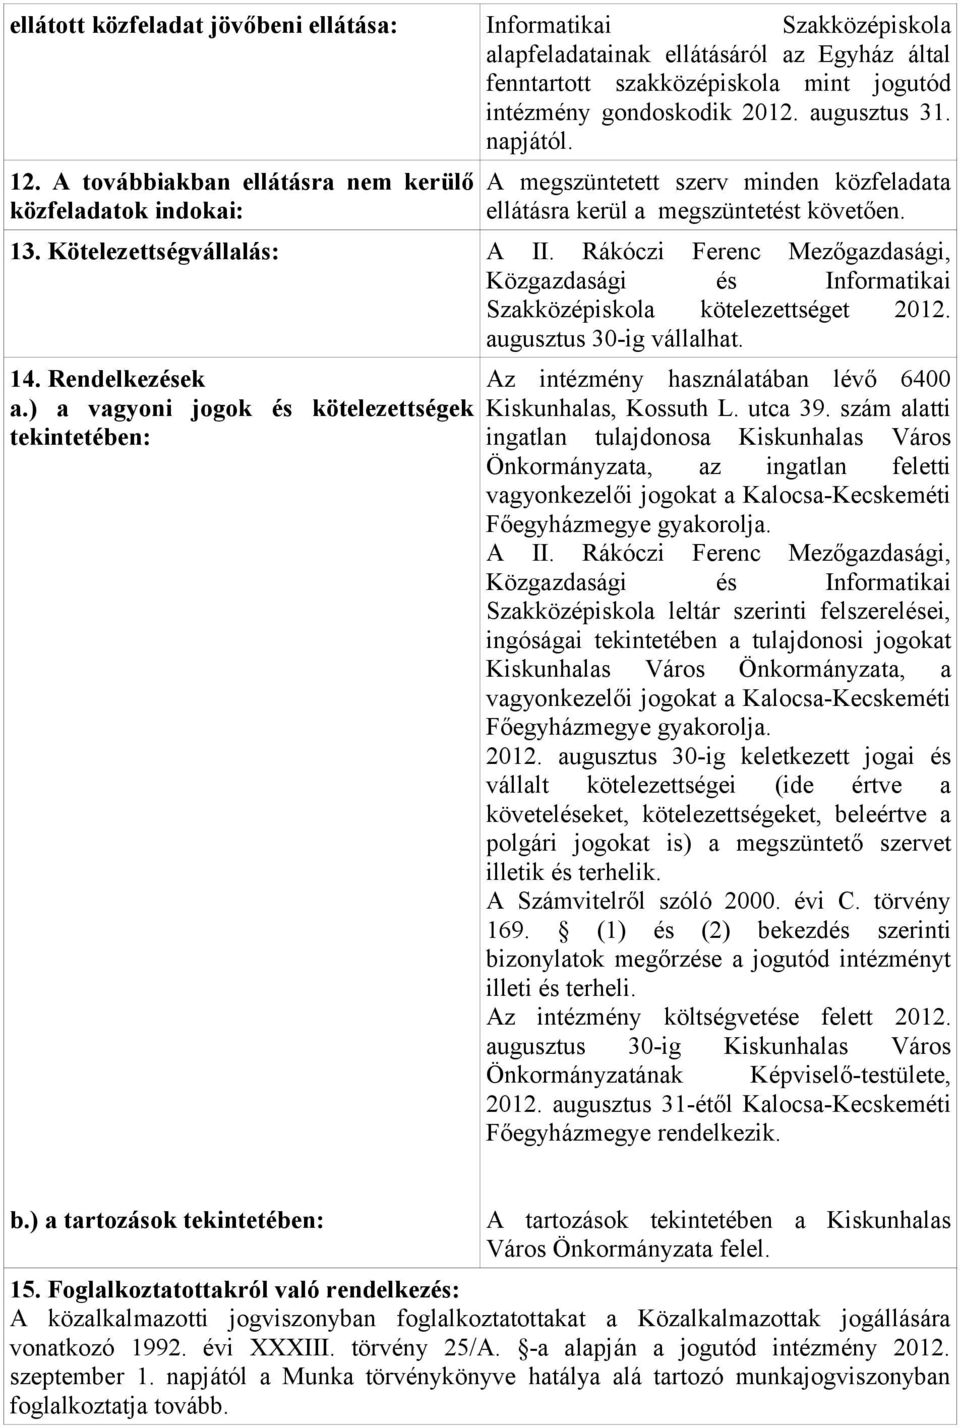 Rákóczi Ferenc Mezőgazdasági, Közgazdasági és Informatikai Szakközépiskola kötelezettséget 2012. augusztus 30-ig vállalhat. 14. Rendelkezések a.